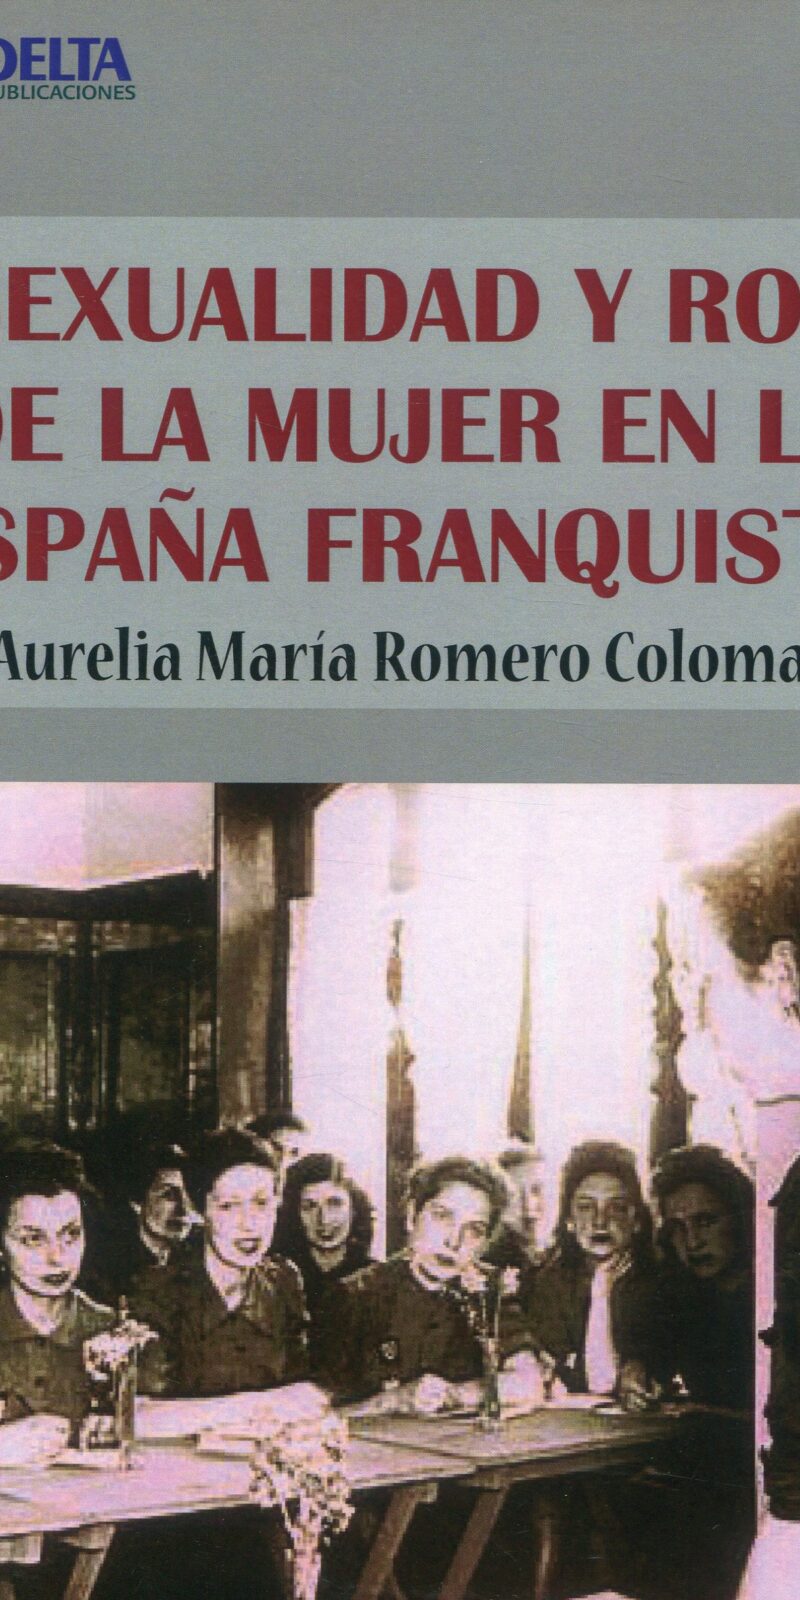 Sexualidad y rol de mujer en España Franquista 9788416383856